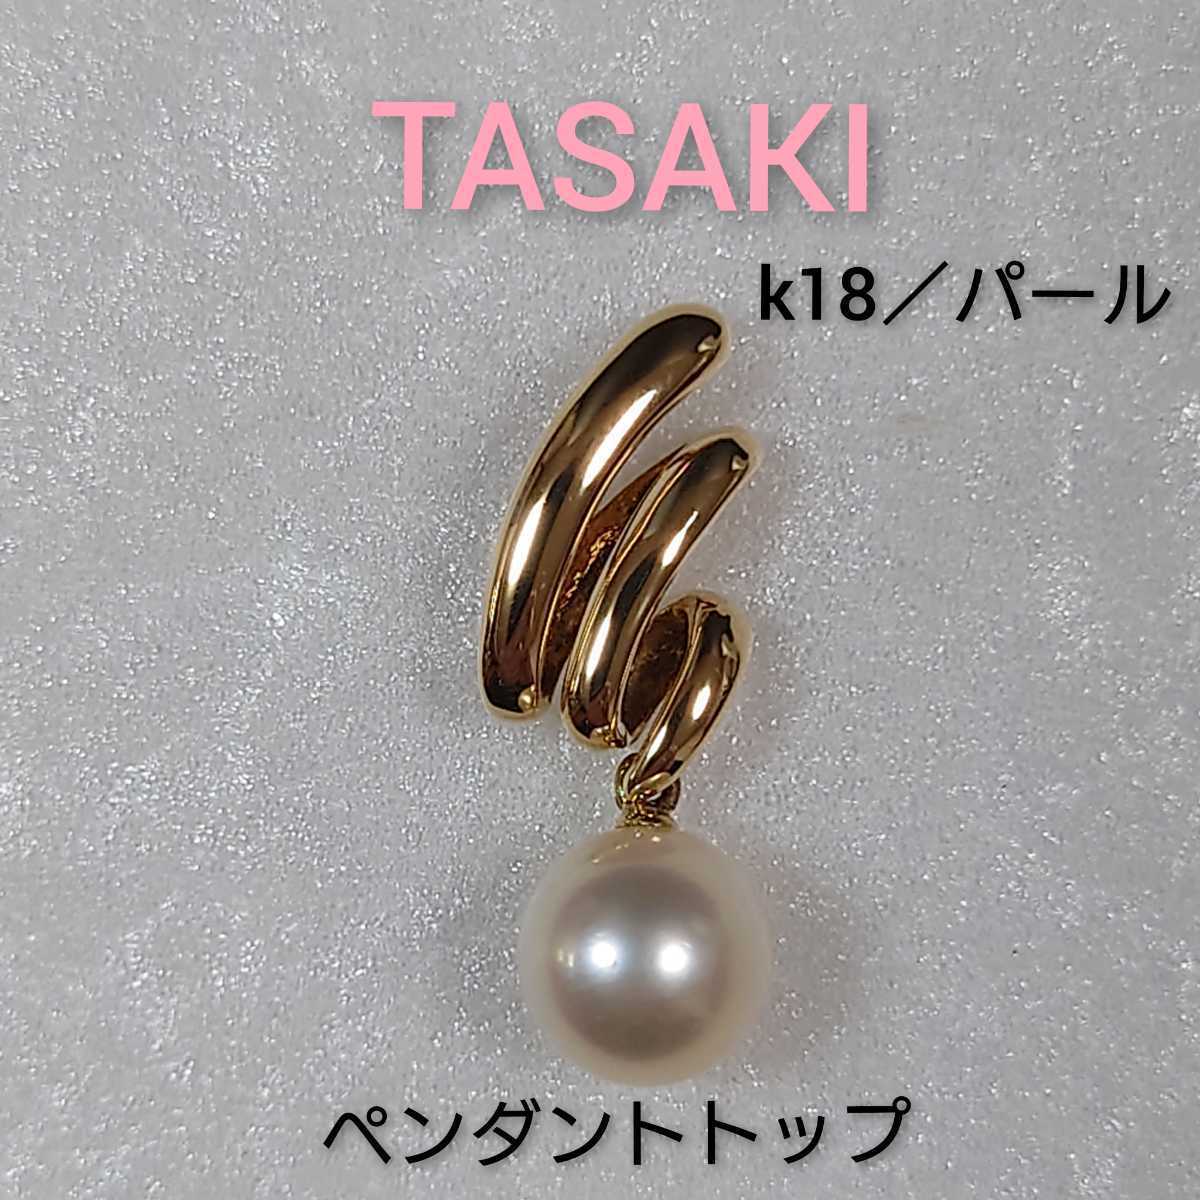 【TASAKI】 タサキ k18／パール スクリブルモチーフ ペンダントトップ